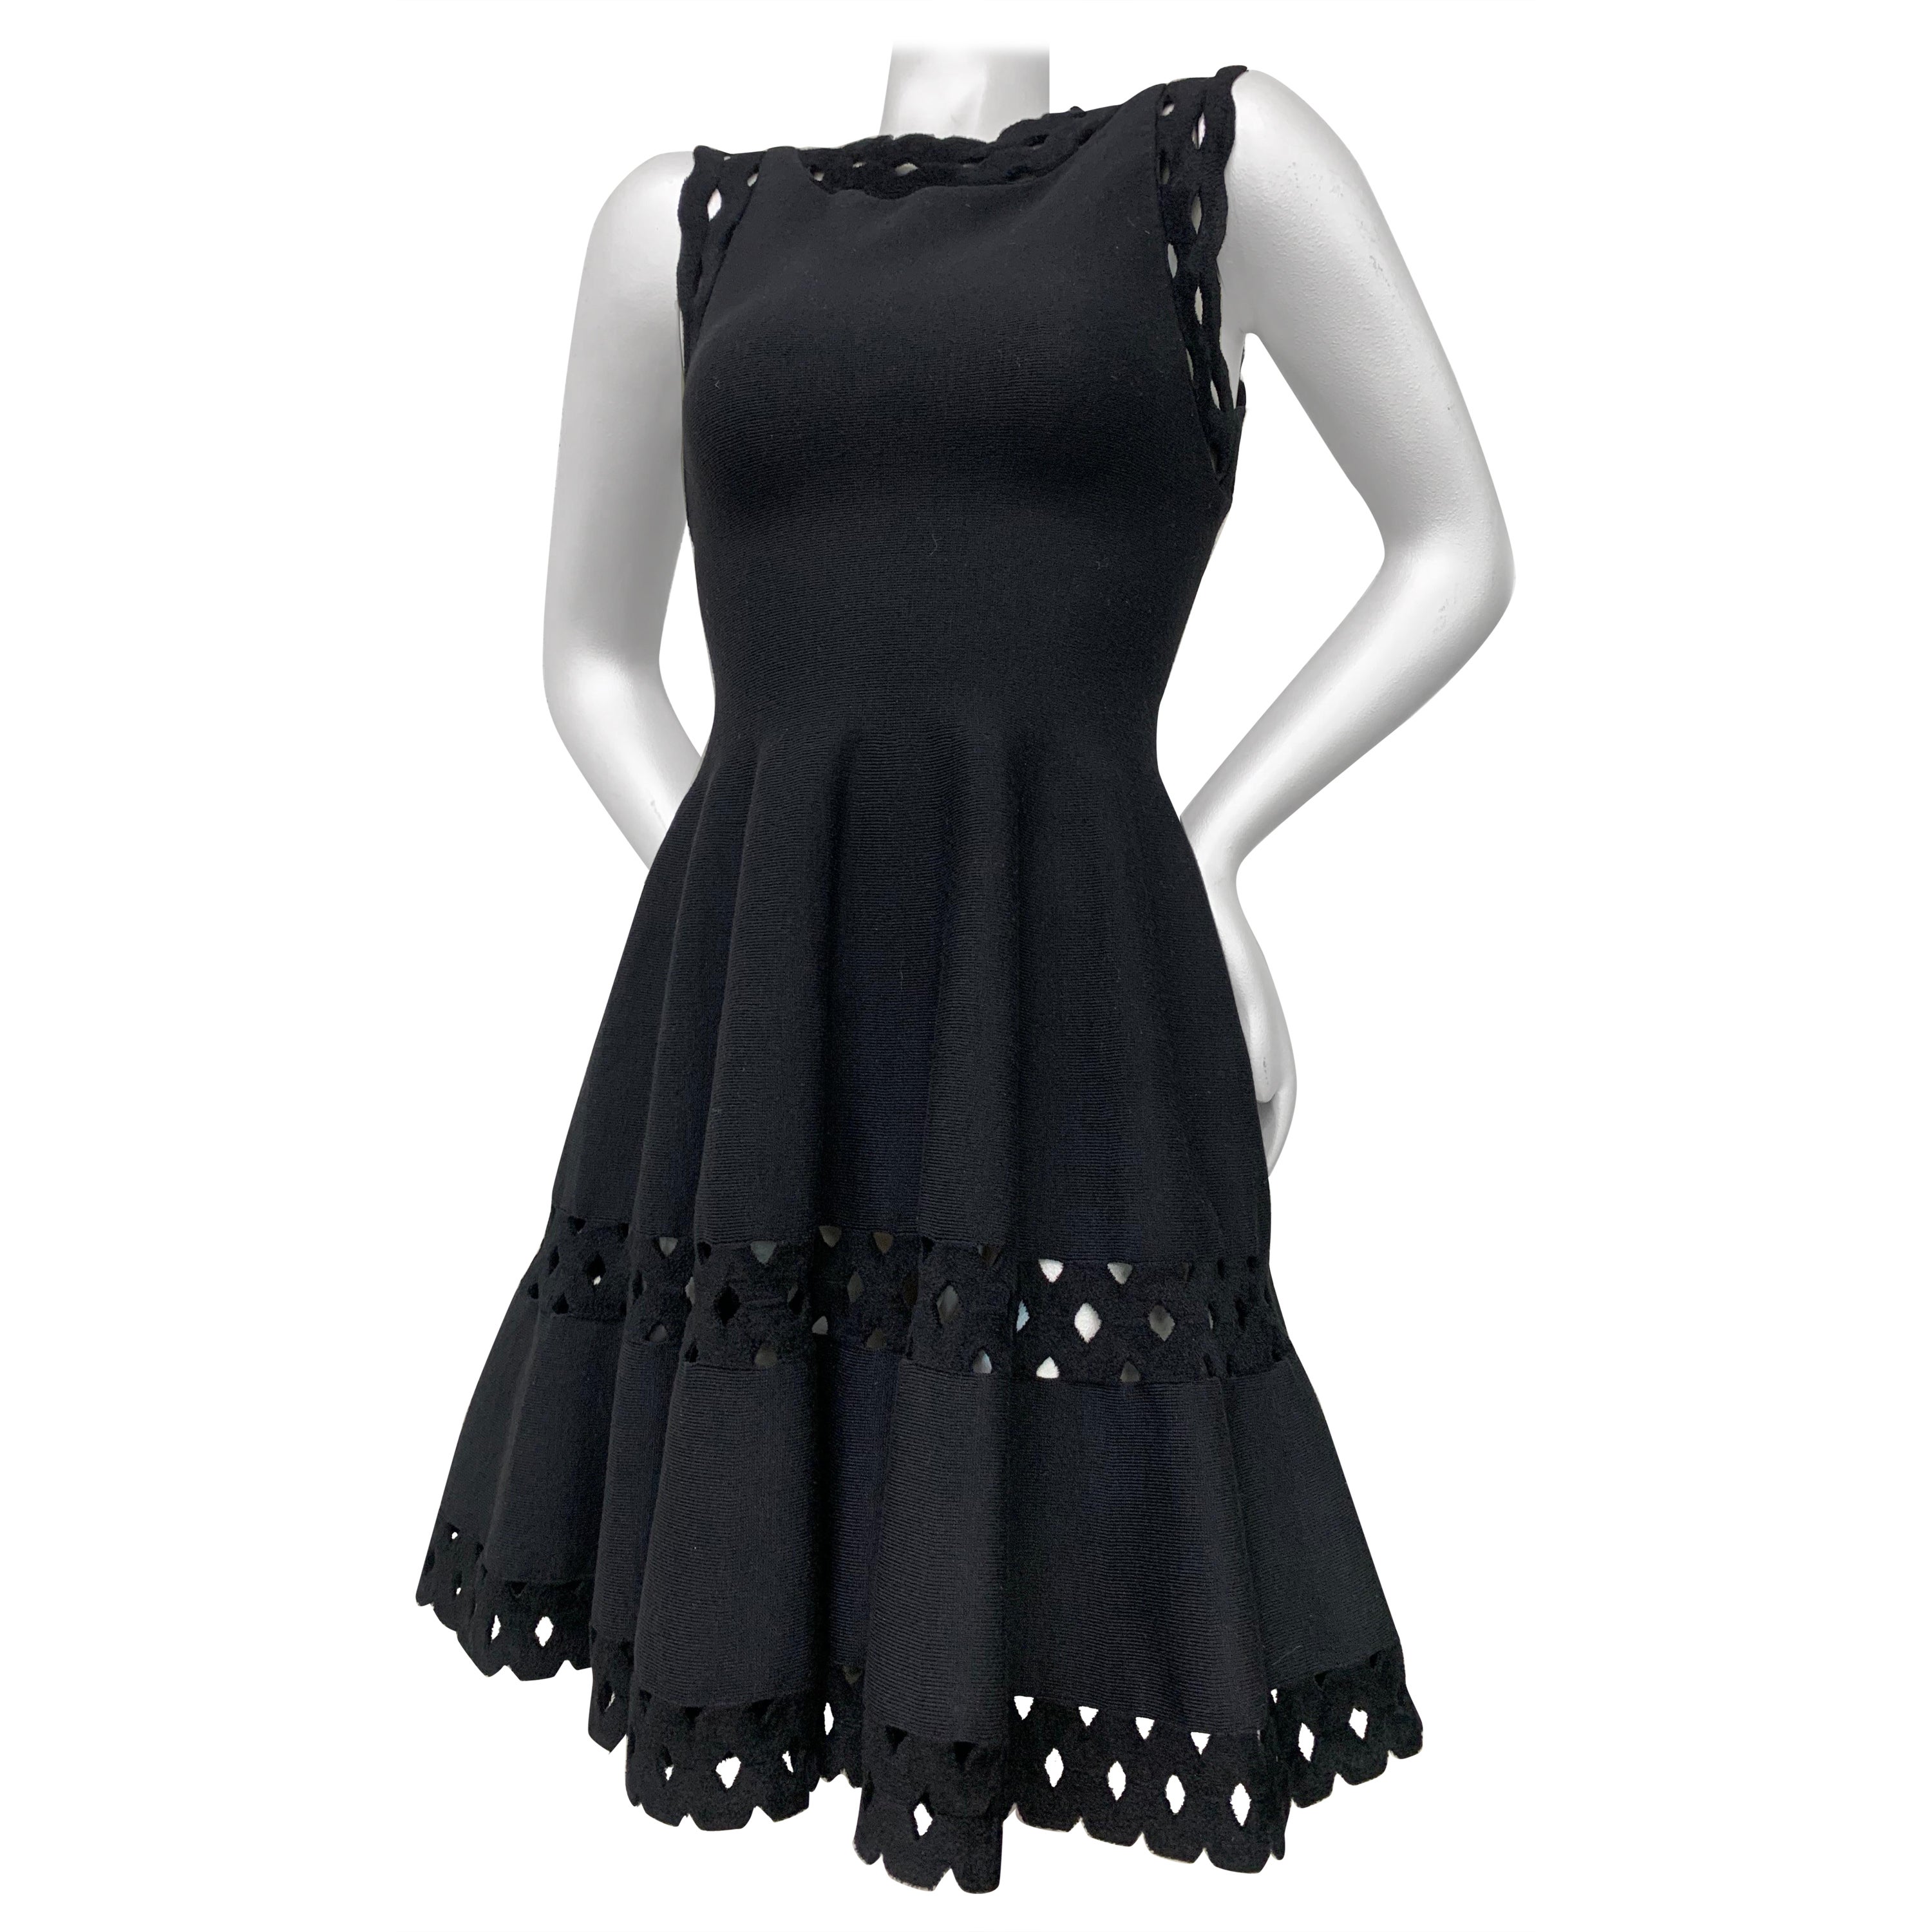 Alaia Black Little Black Dress inspirée des années 1950 avec jupe ample, ourlet en œillets et empiècements en vente